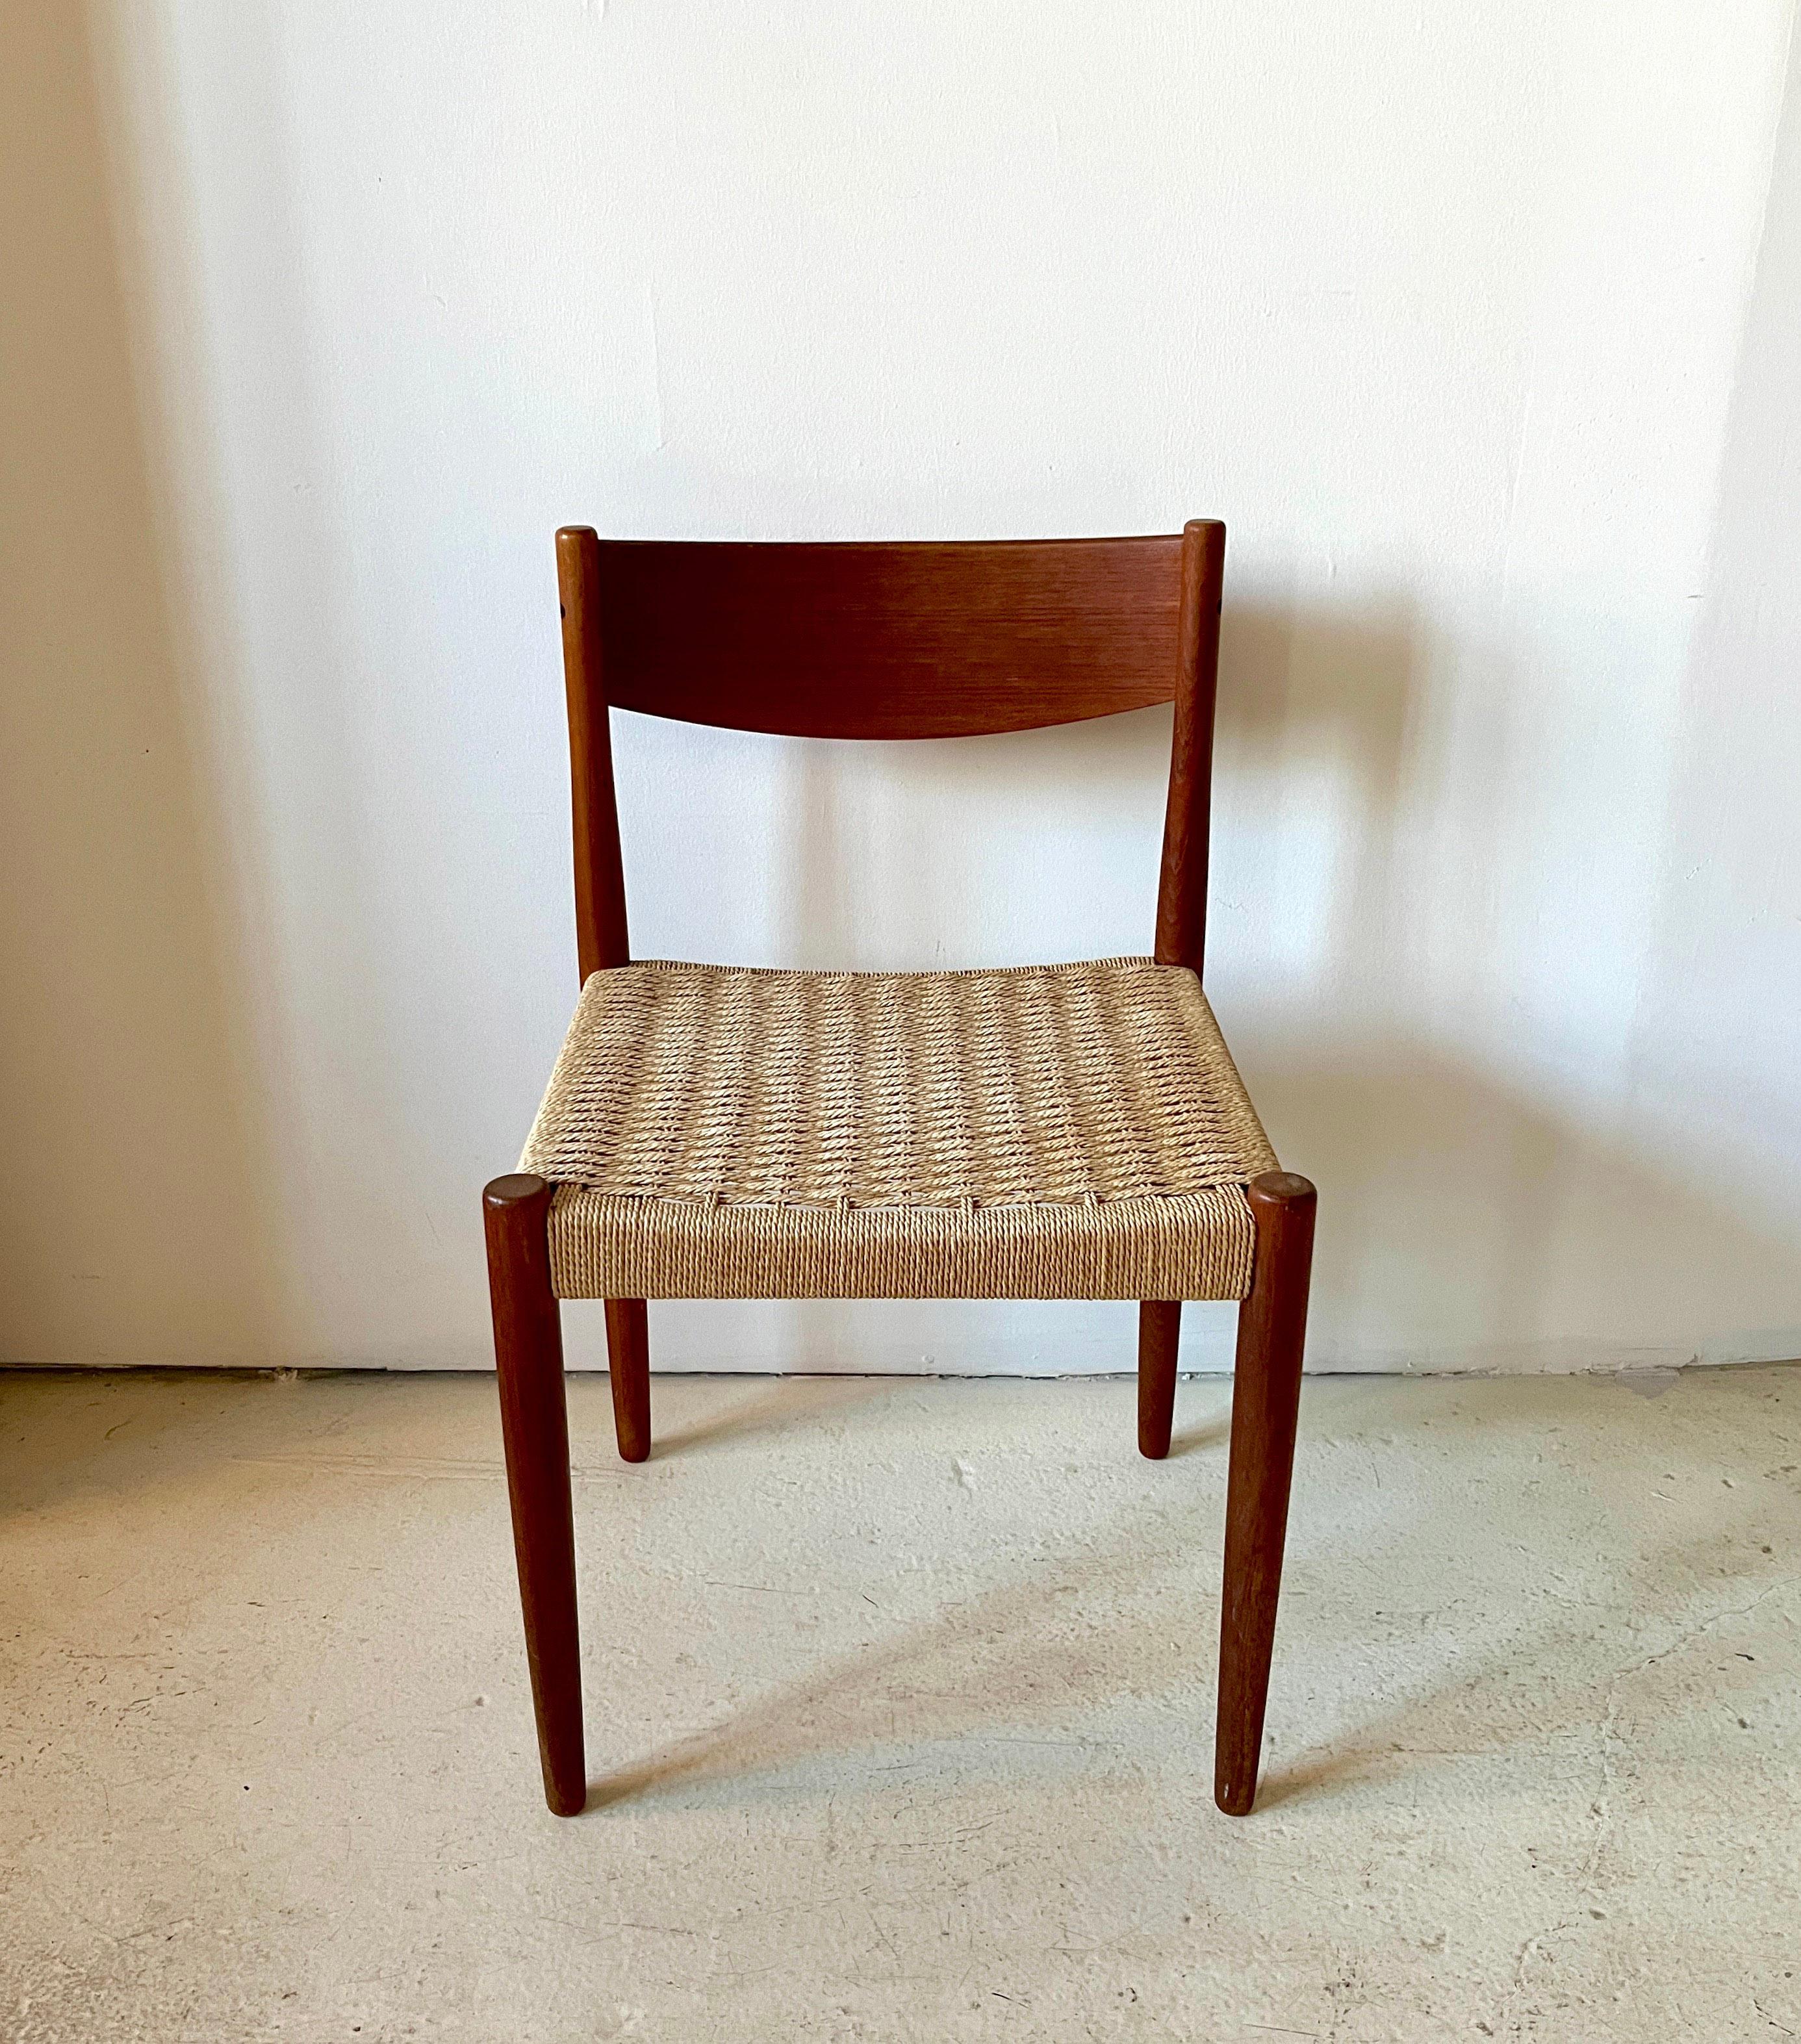 Chaises de salle à manger danoises en teck massif sculpté, fabriquées au Danemark par Poul M. A&M pour Frem Røjle.

Les chaises sont dotées d'étonnants pieds sculpturaux, d'un grain de bois de teck et de dossiers d'assise ! Les détails sont d'une